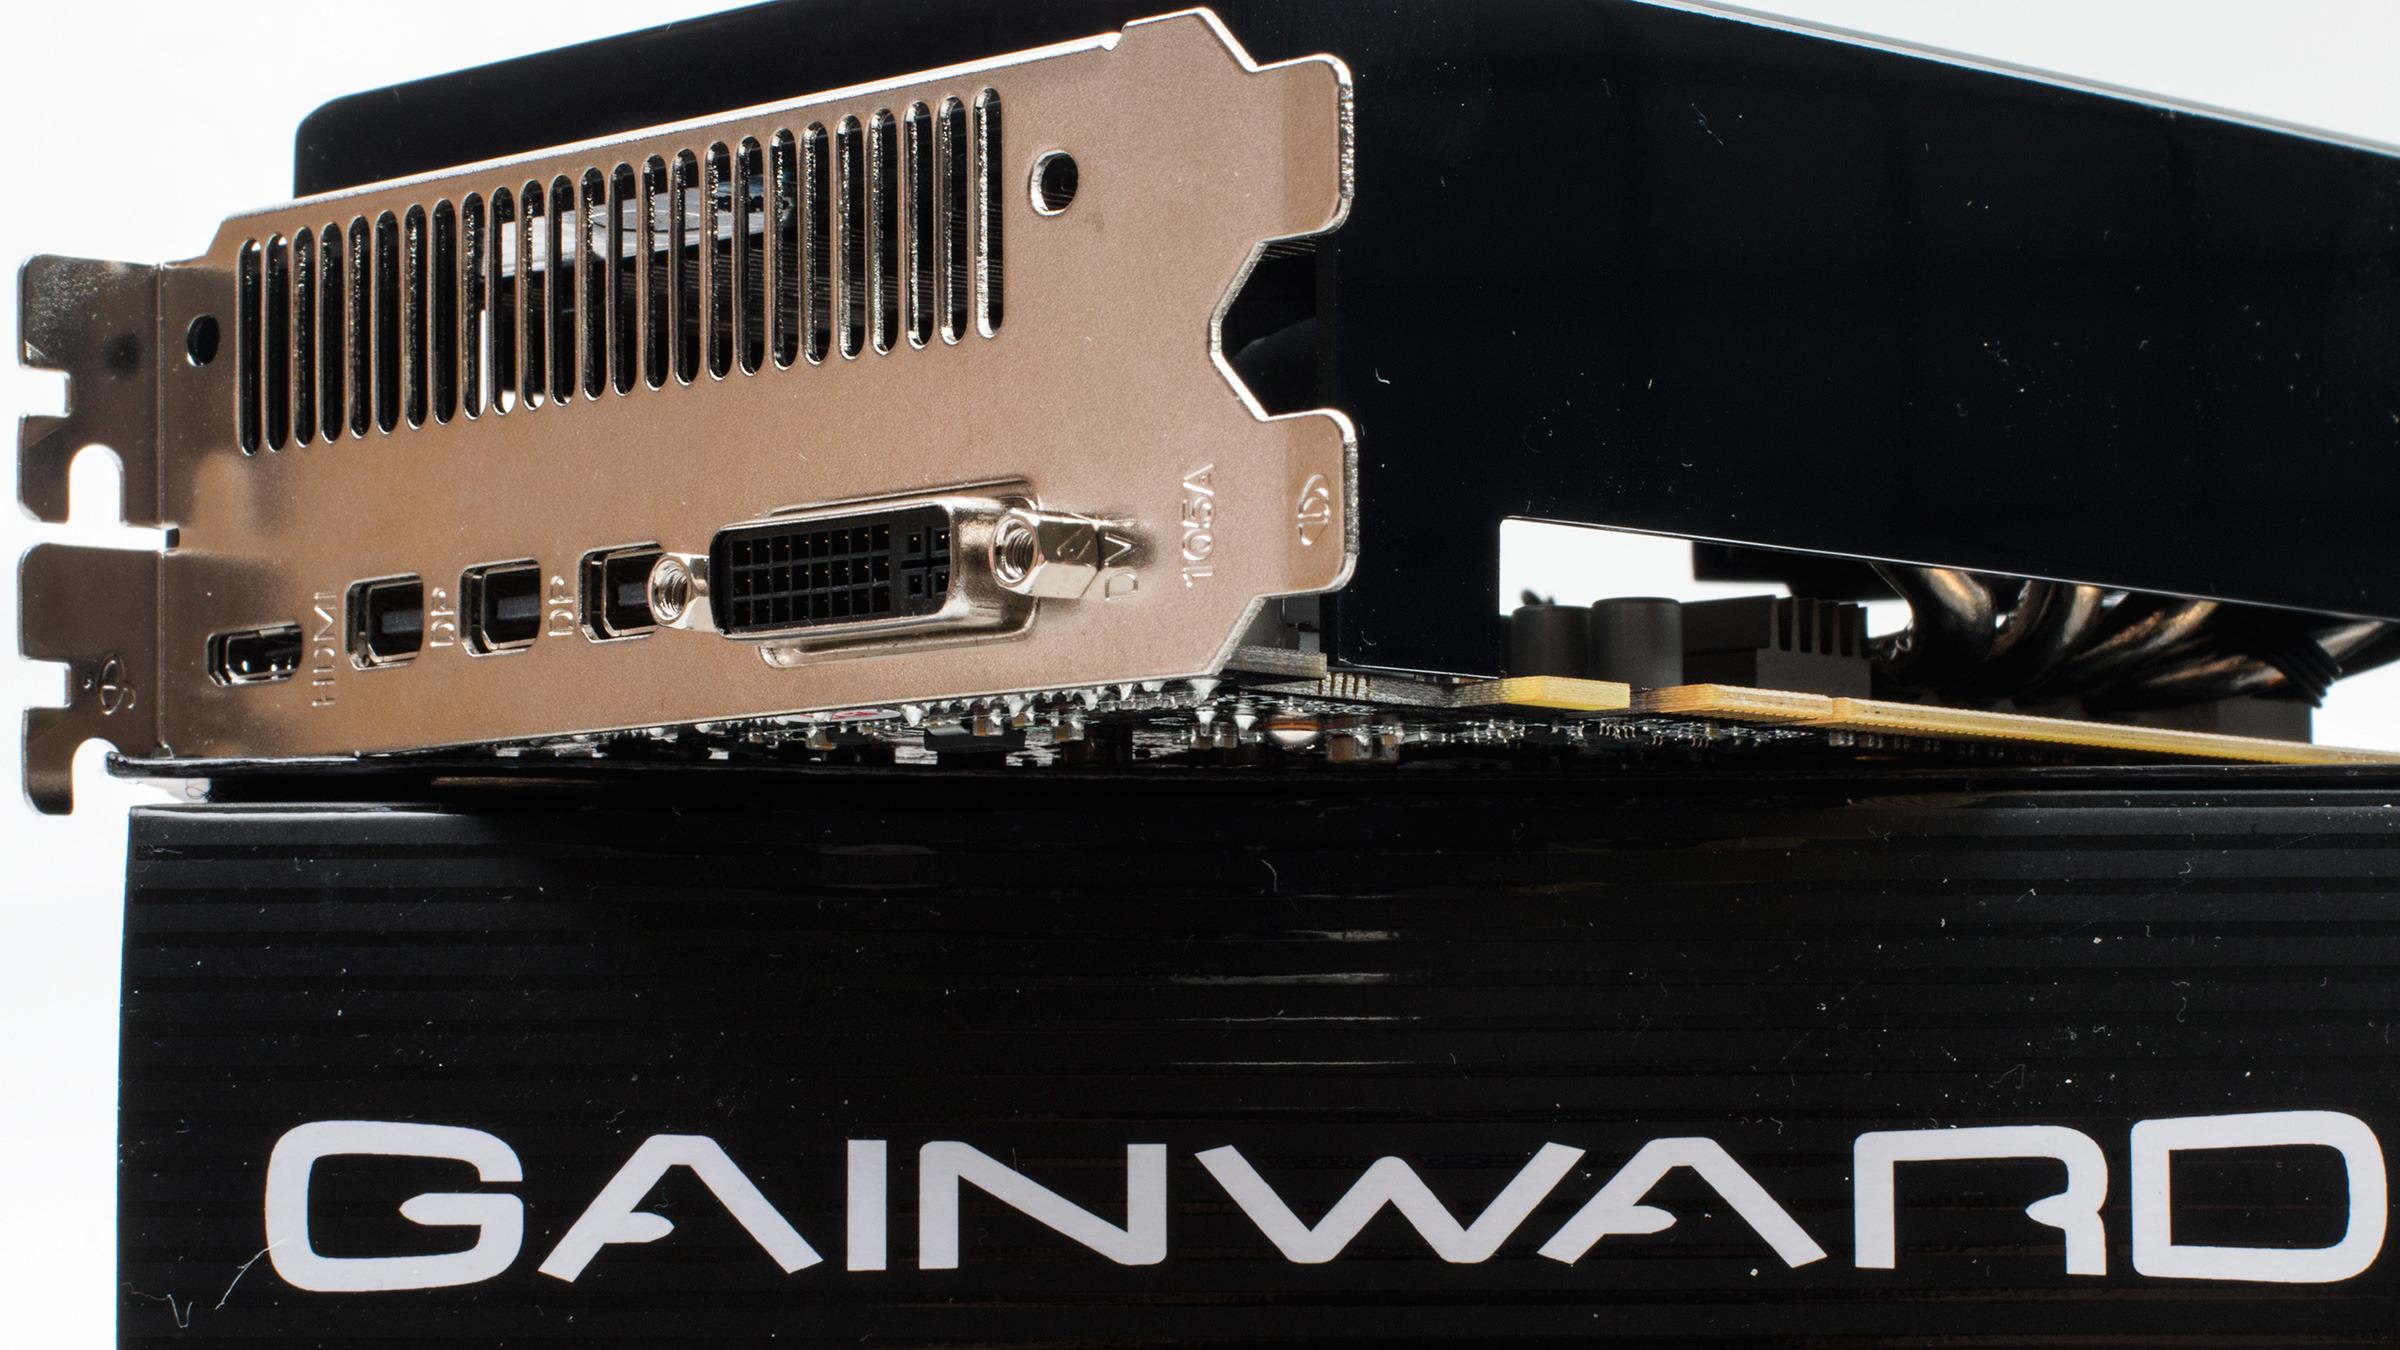 Gainward GeForce GTX 970 Phantom har tre utganger til Mini DisplayPort, en Mini HDMI-utgang, og DVI.Foto: Varg Aamo, Tek.no